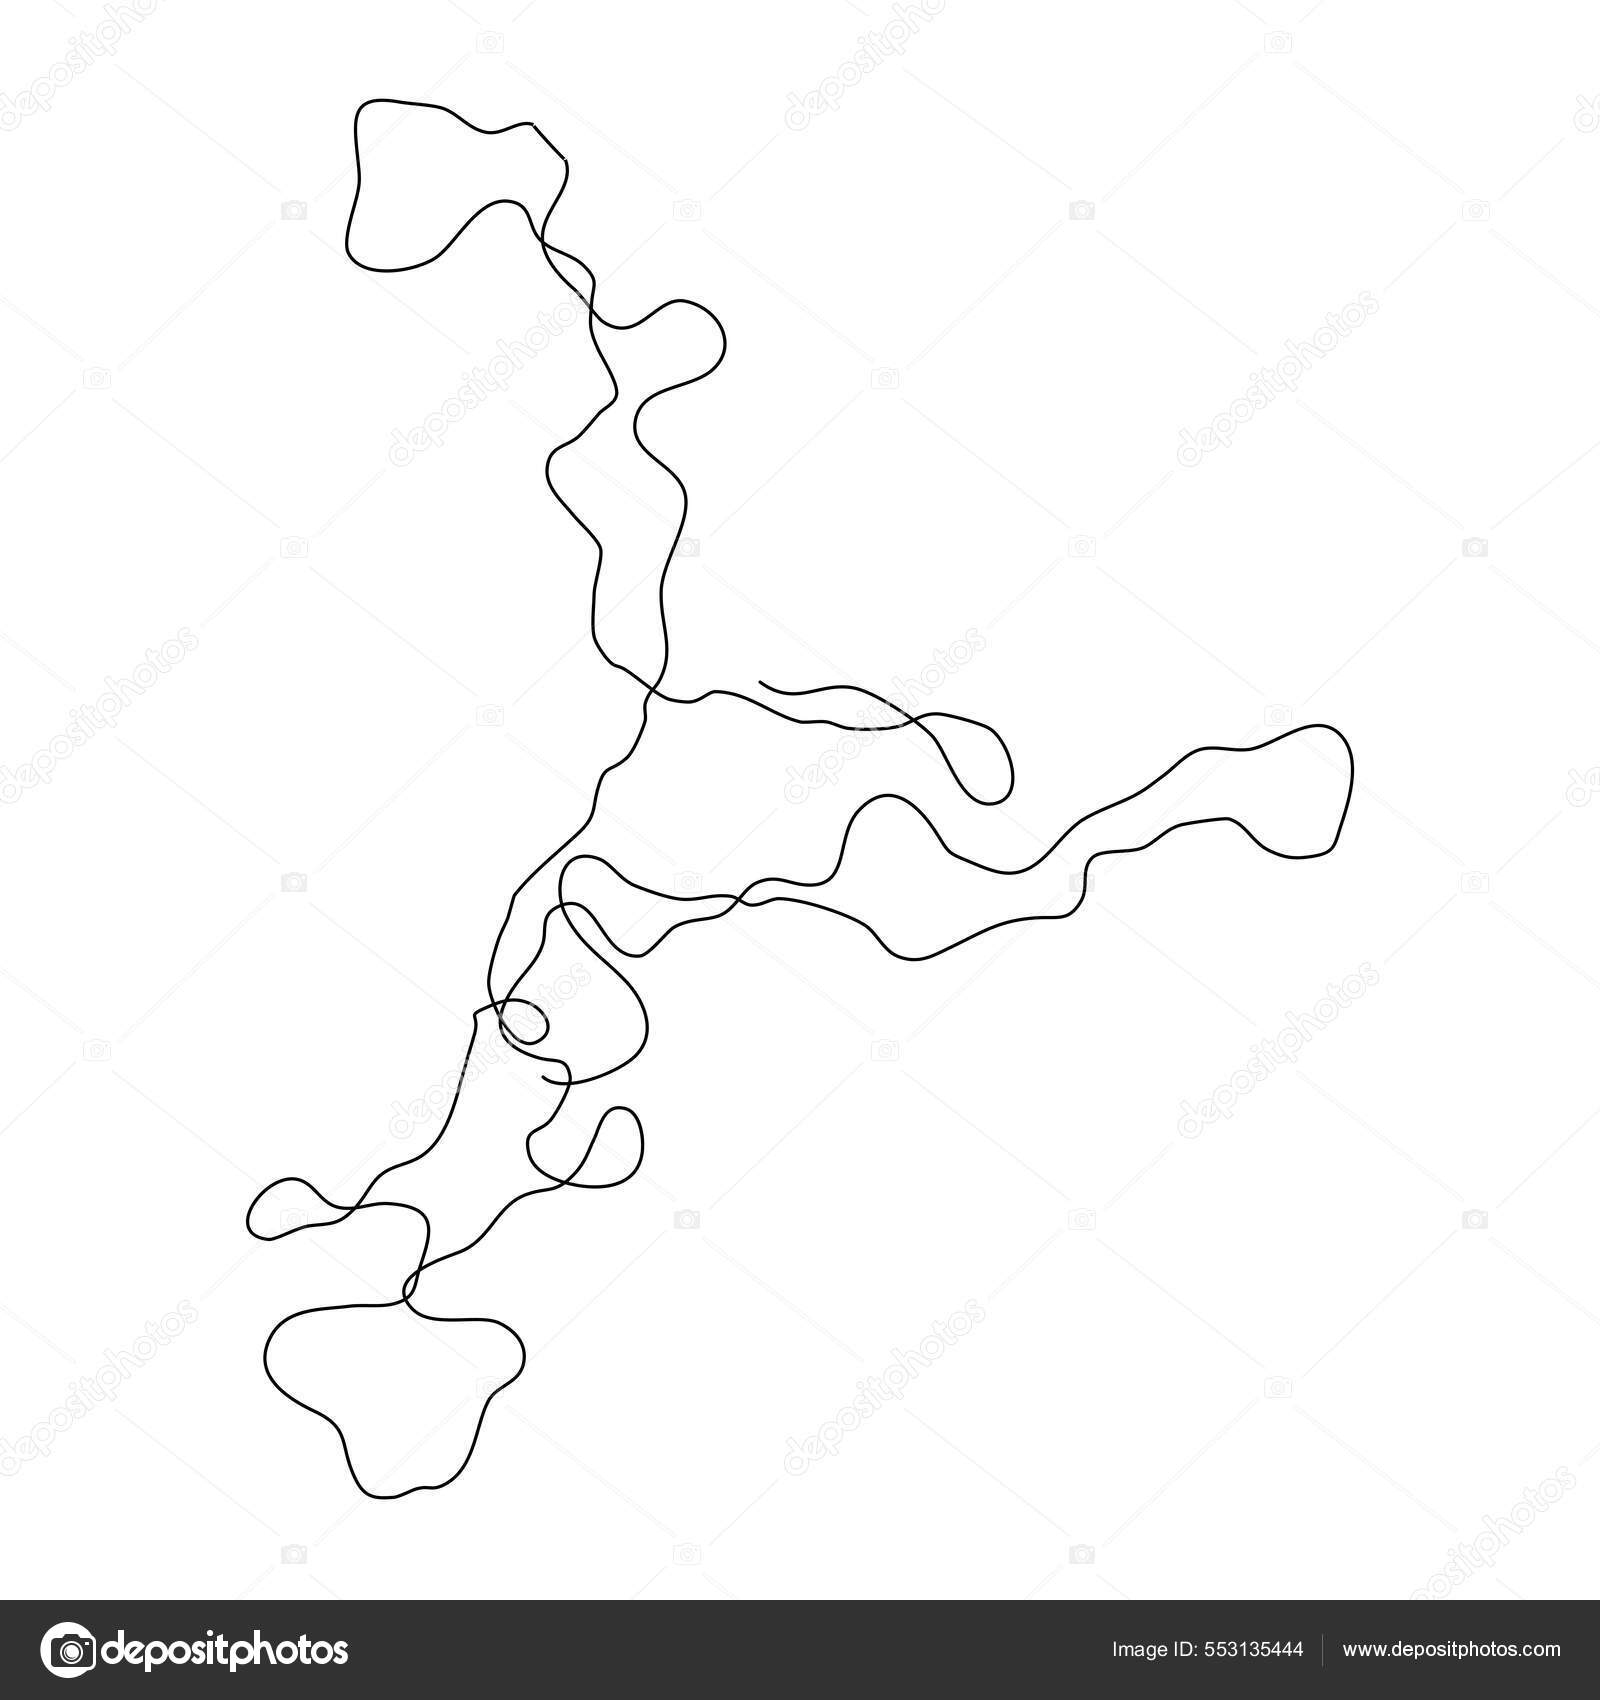 Cobra em estilo doodle, imagem linear única de uma serpente se contorcendo,  ícone de contorno